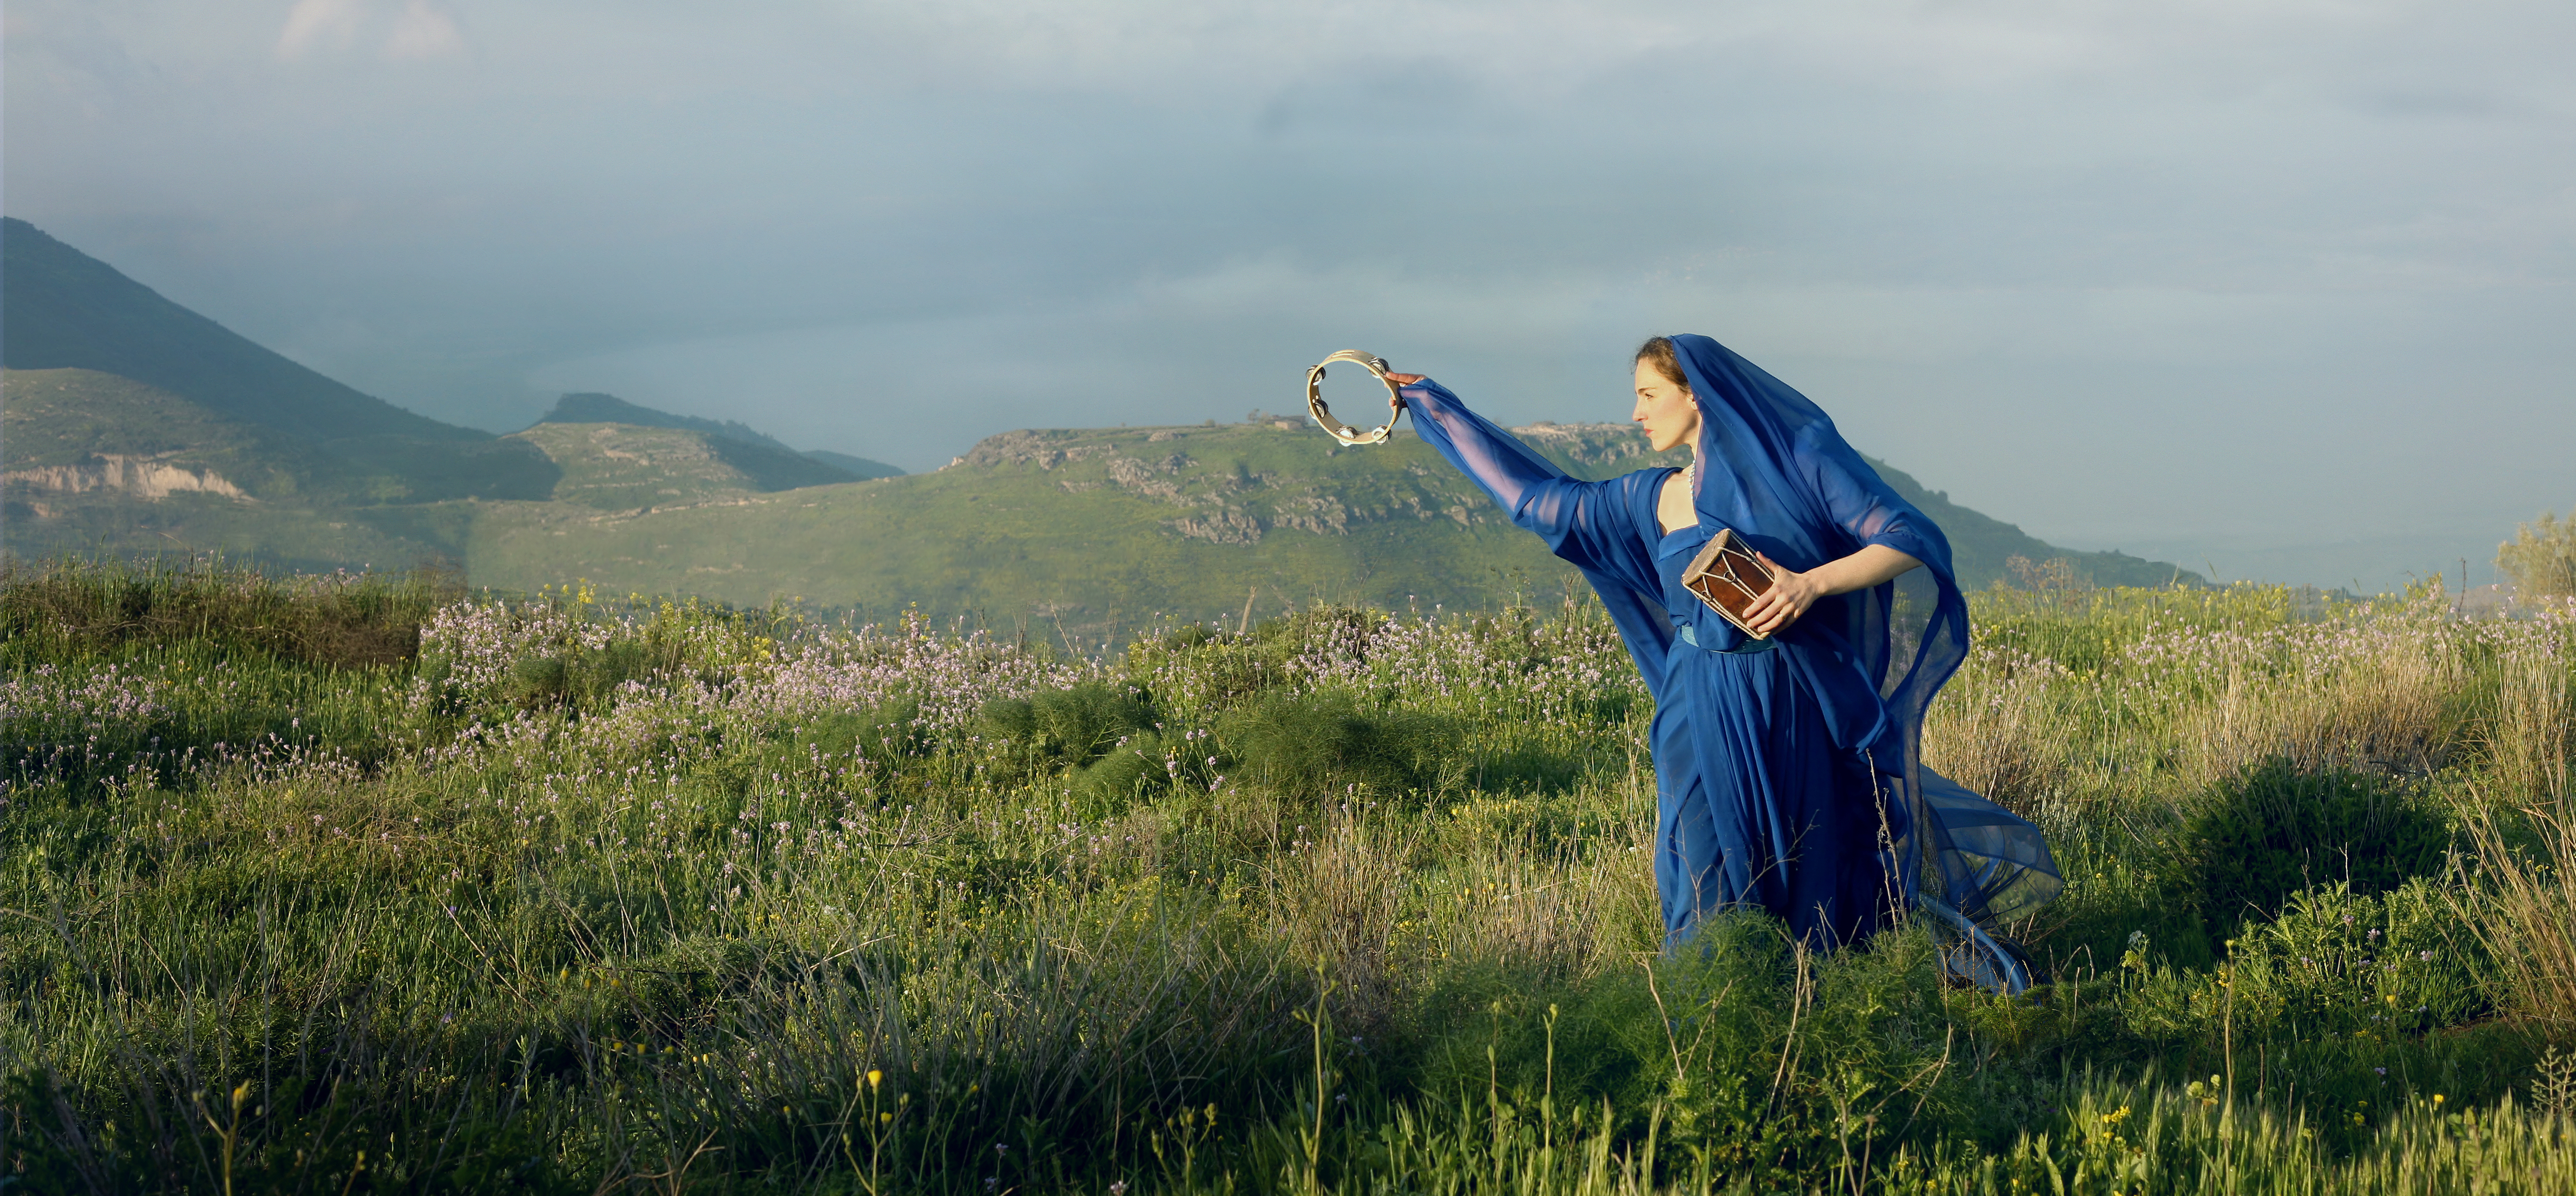 Photographing Biblical Women